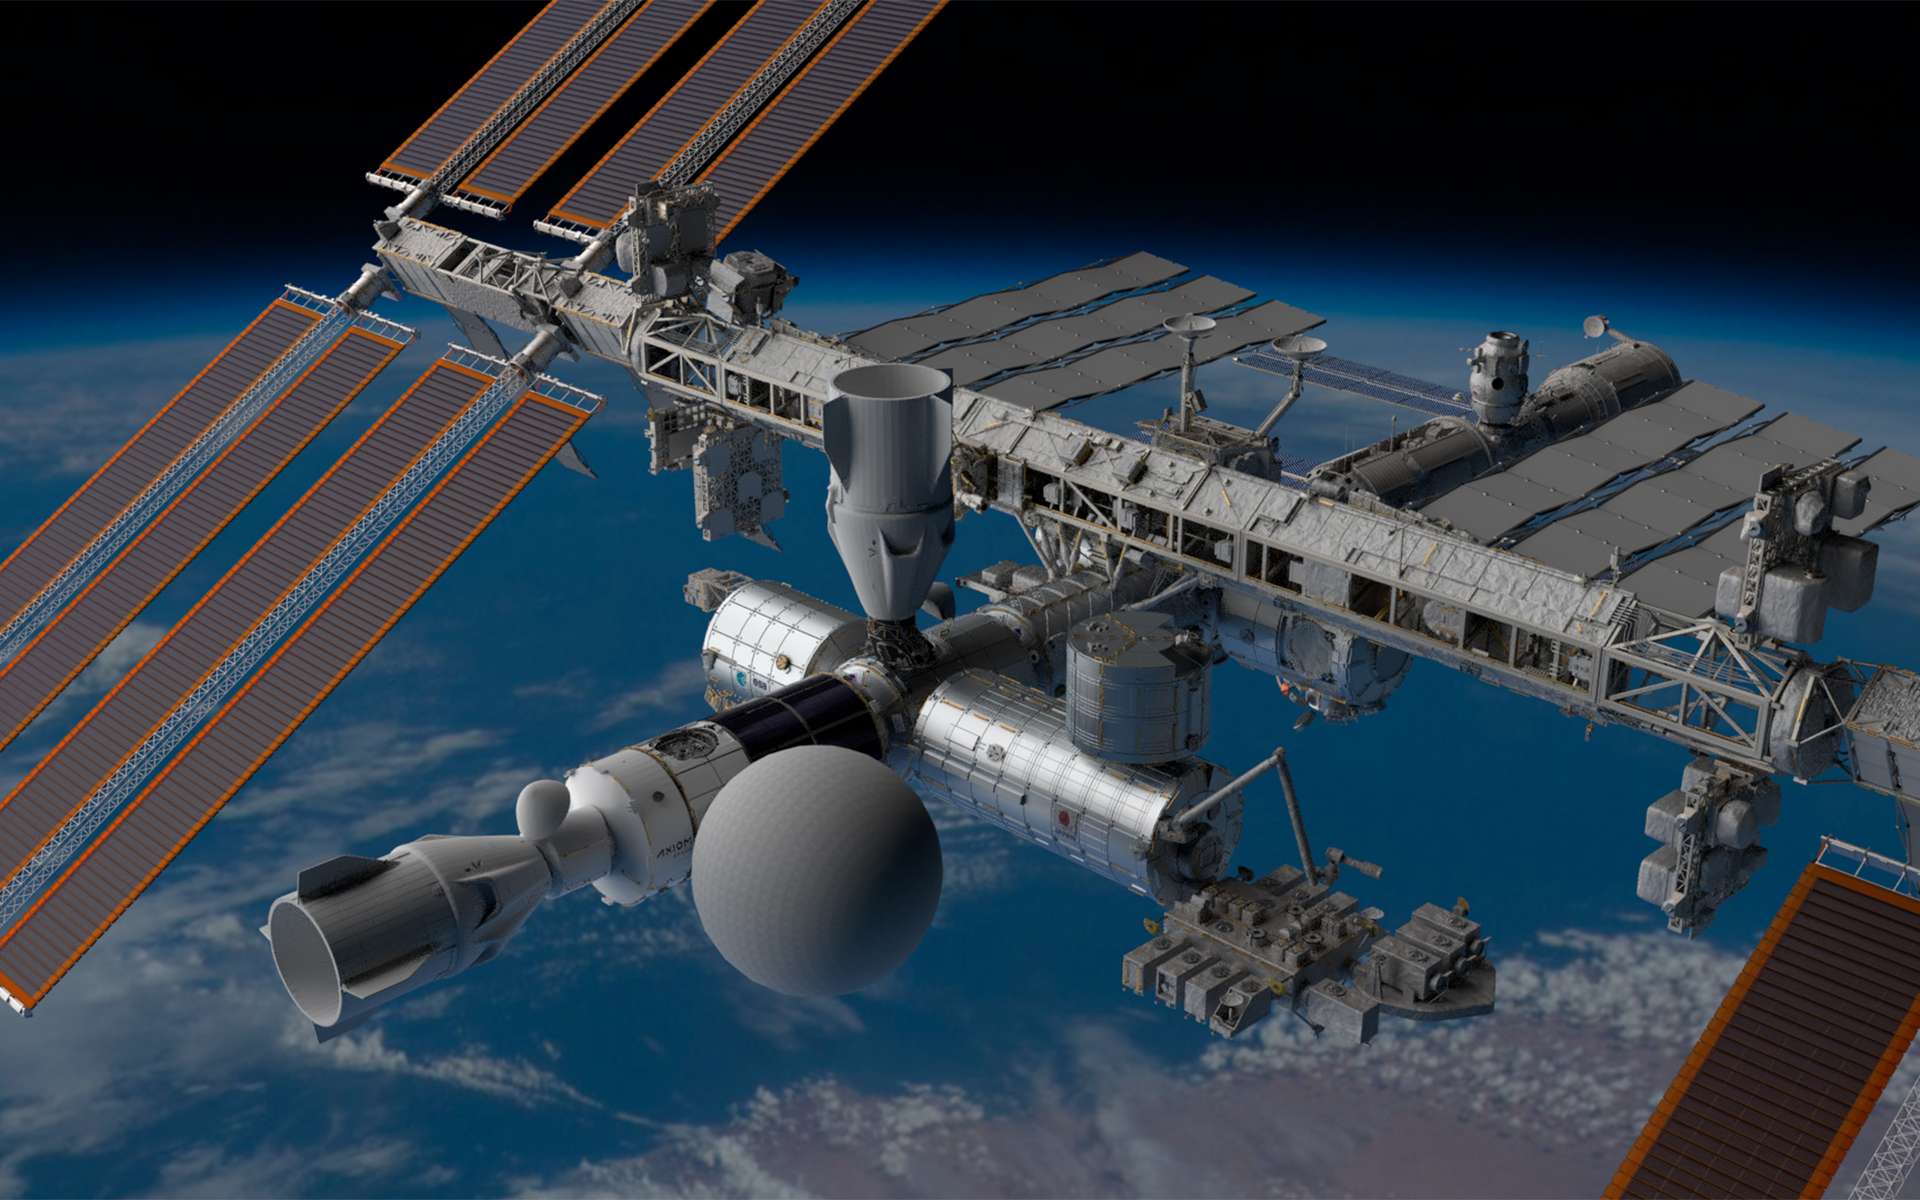 Au premier plan, le segment Axiom de la Station spatiale internationale avec le module gonflable SEE-1 (la grosse boule) qui fera office de lieu de divertissement. Le segment Axoim pourrait compter jusqu'à 6 modules et une coupole d'observation de la Terre. Les deux premiers modules de ce segment, le nœud de jonction Node 1 (AxN1) et le module d'habitation (AxH), seront réalisés par Thales Alenia Space. © Space Entertainment Enterprise